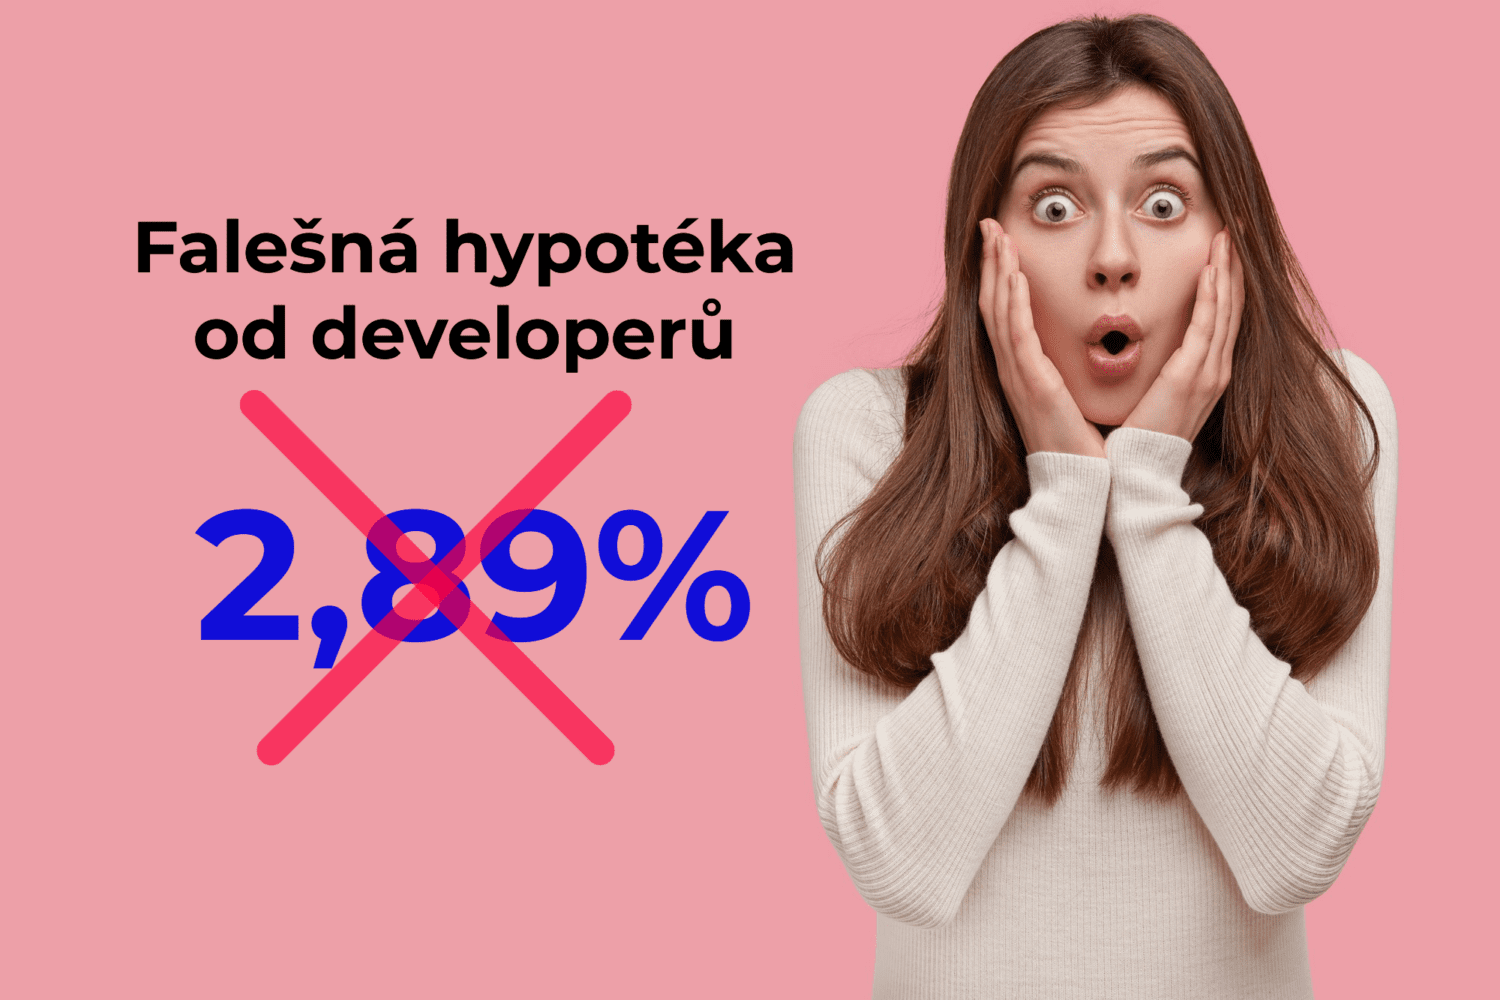 Hypotéka od developera určitě není za 2,89%